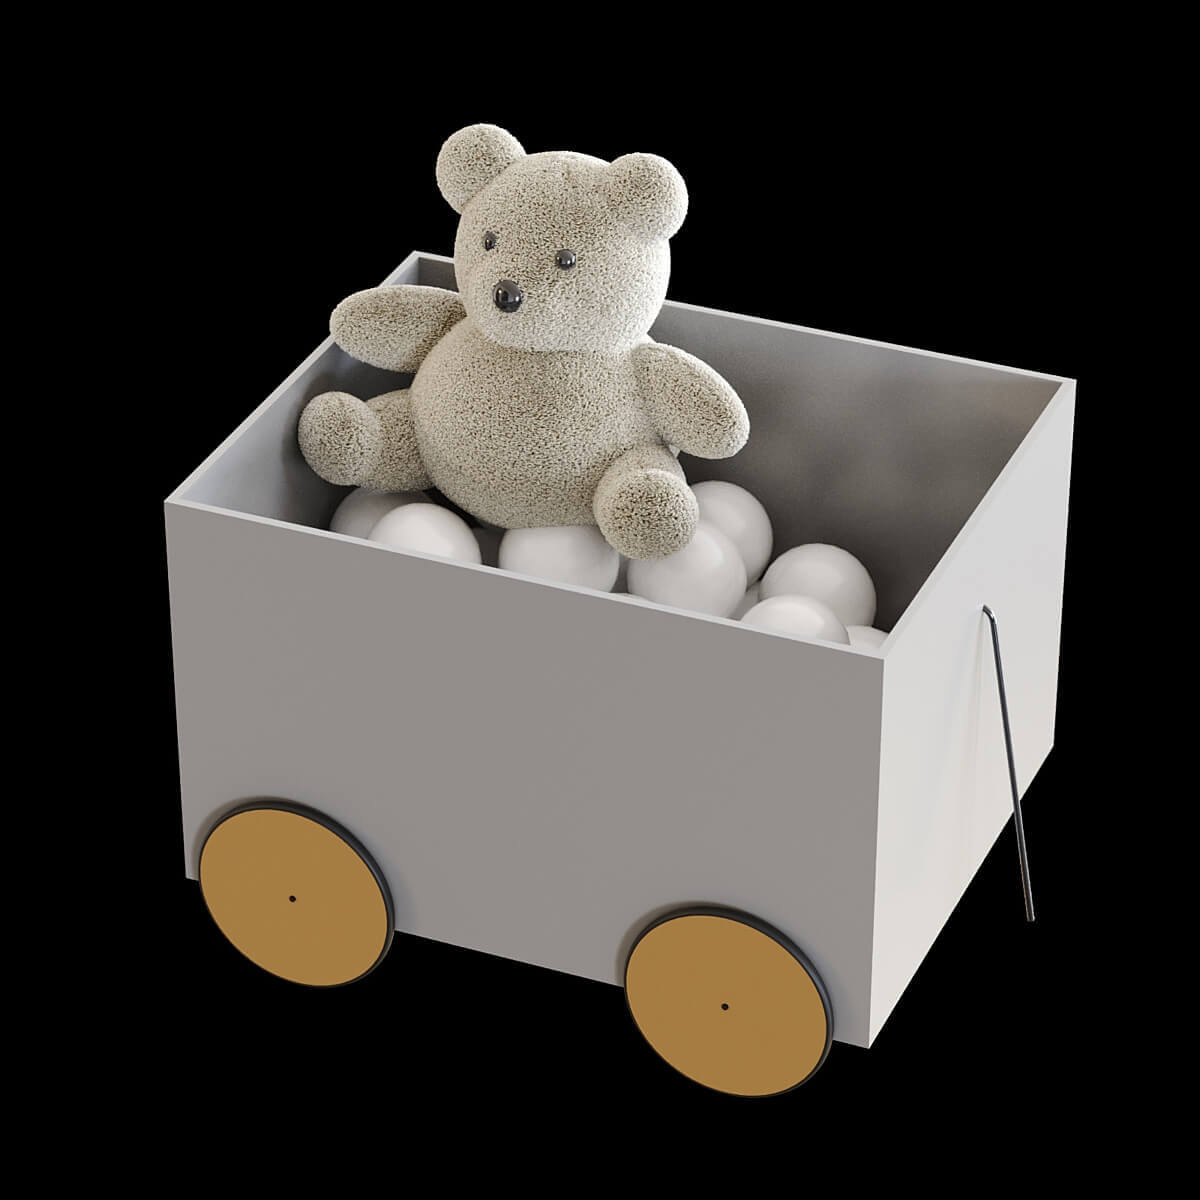 玩具箱中的小球和小熊布偶3D模型（OBJ,MAX）插图